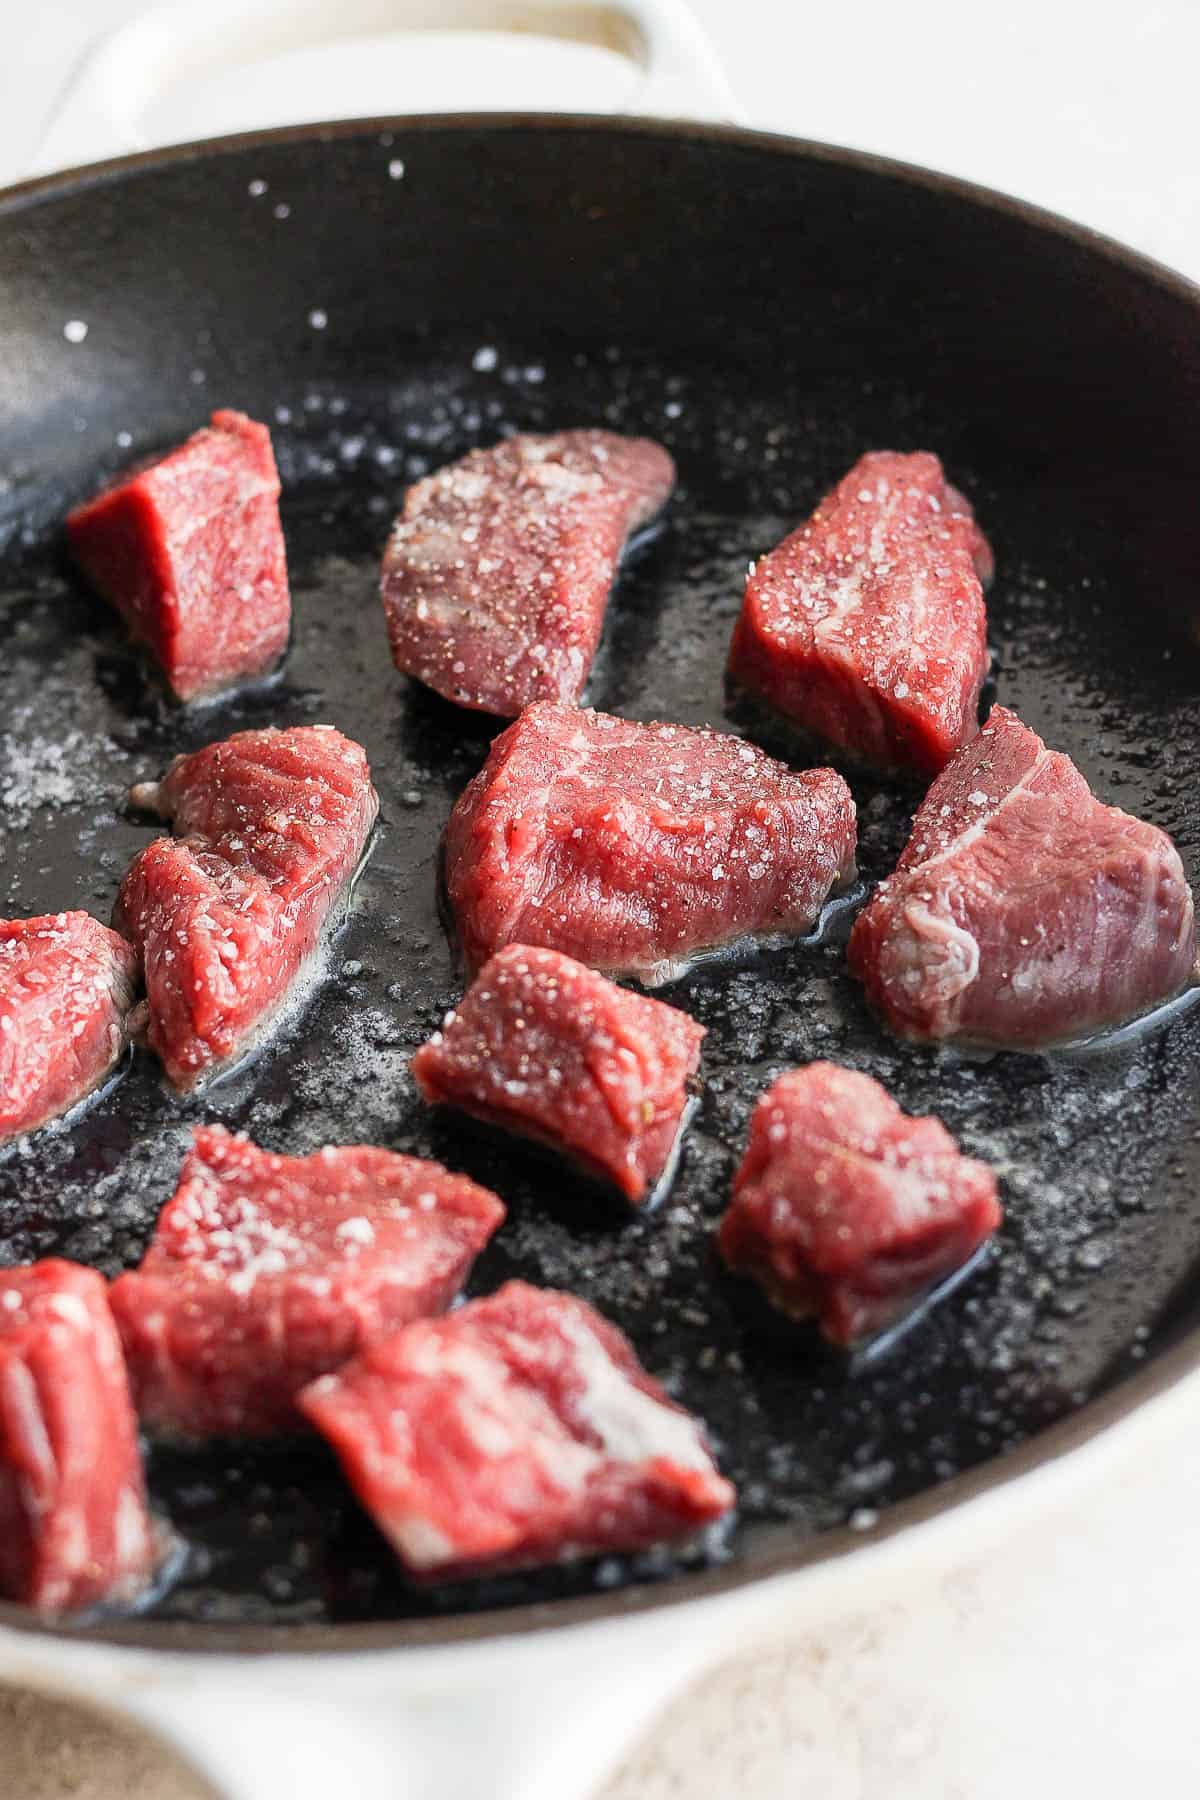 Beef tenderloin steak tips searing in a cast iron skillet.